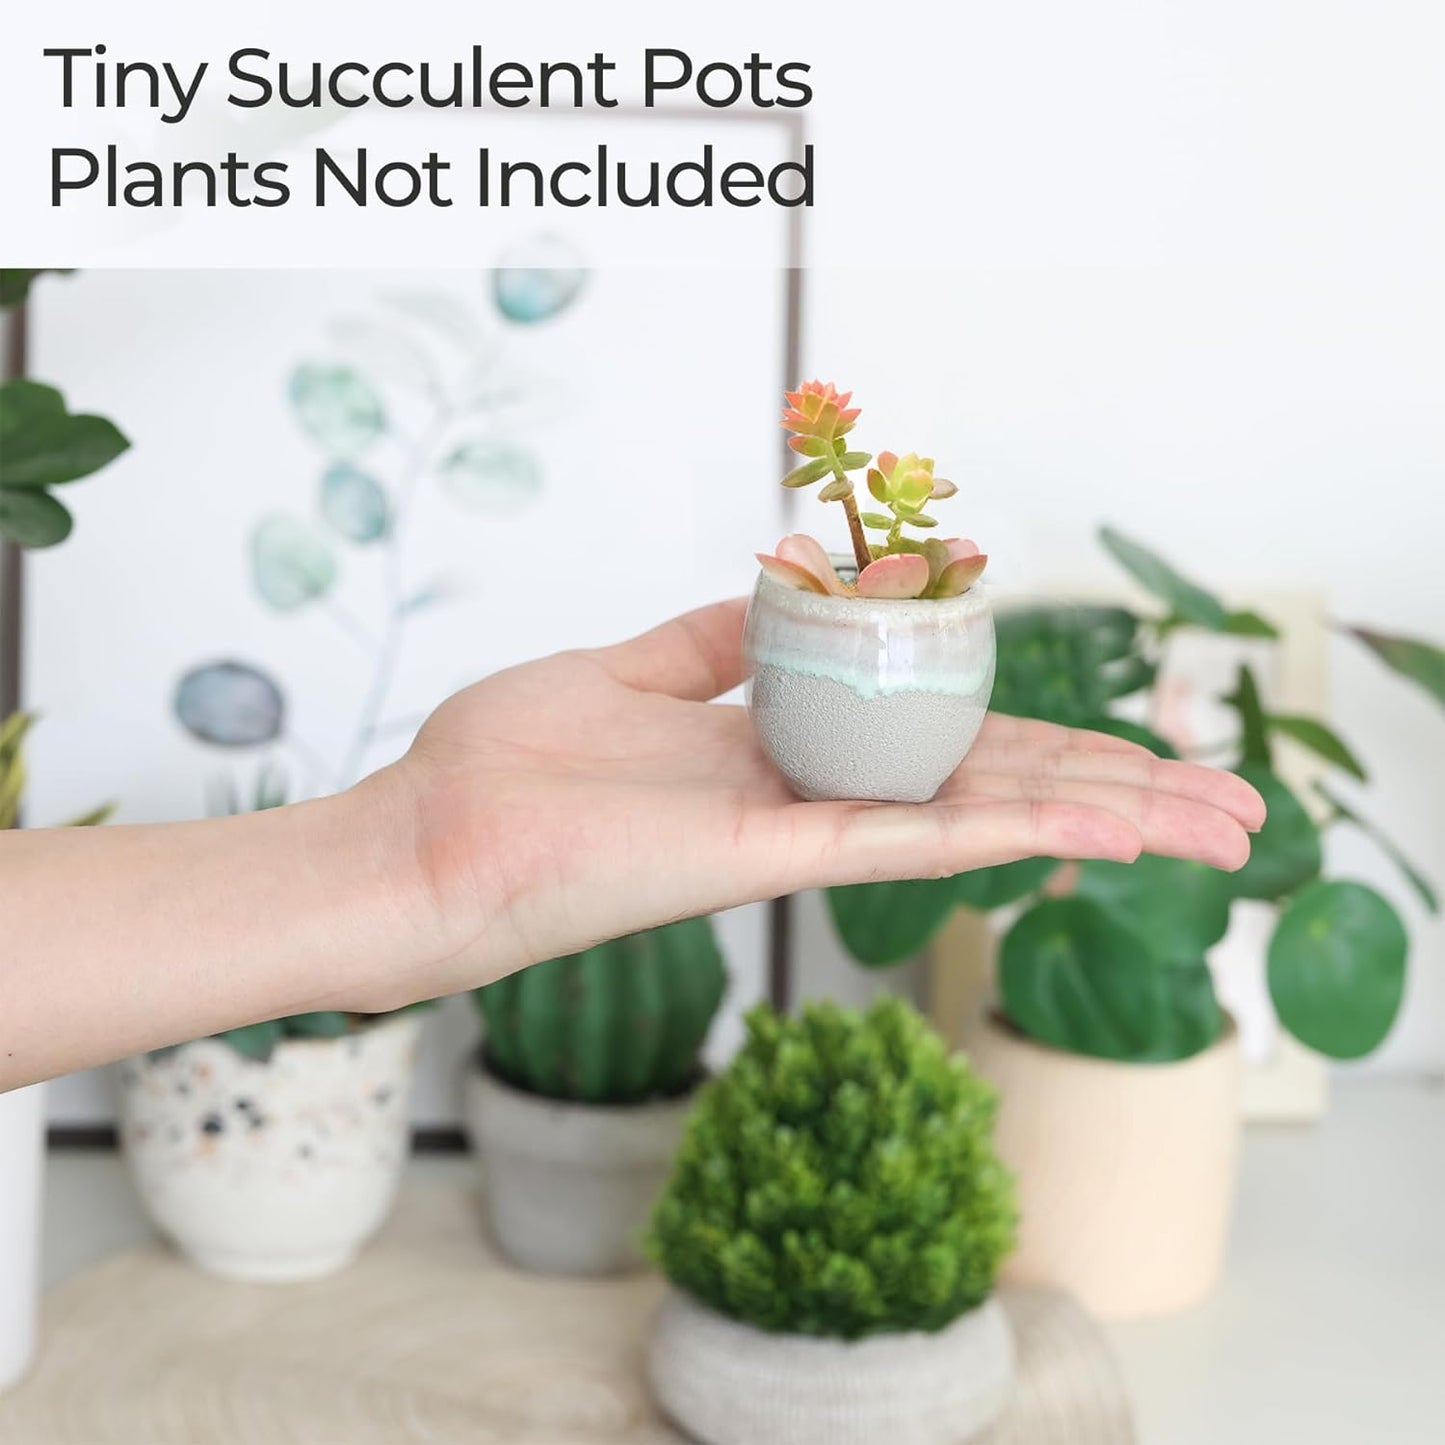 6 PC Small Ceramic Succulent Pots with Drainage, Mini Pots for Plants, Tiny Porcelain Planter